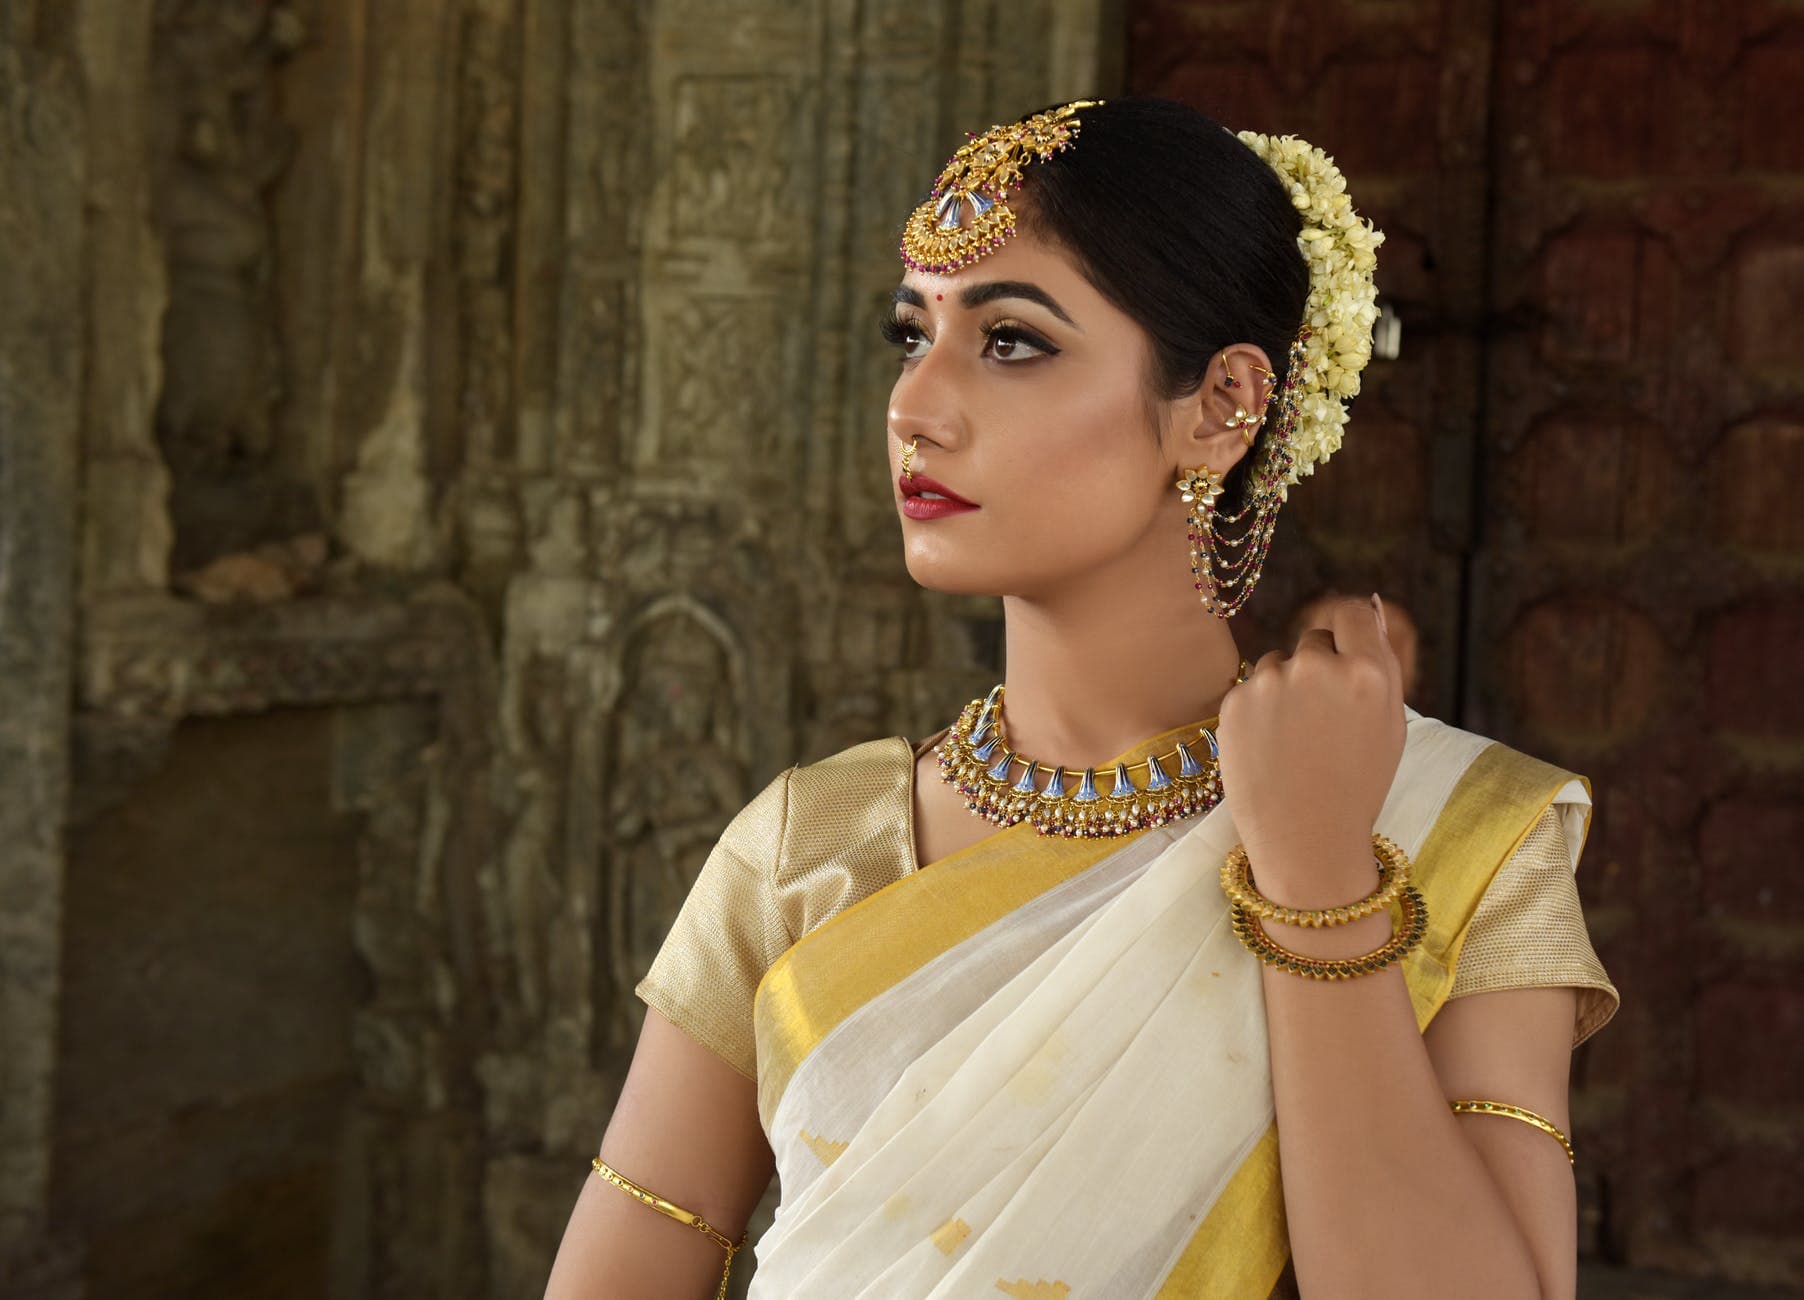 Girl wearing Indian jewelry